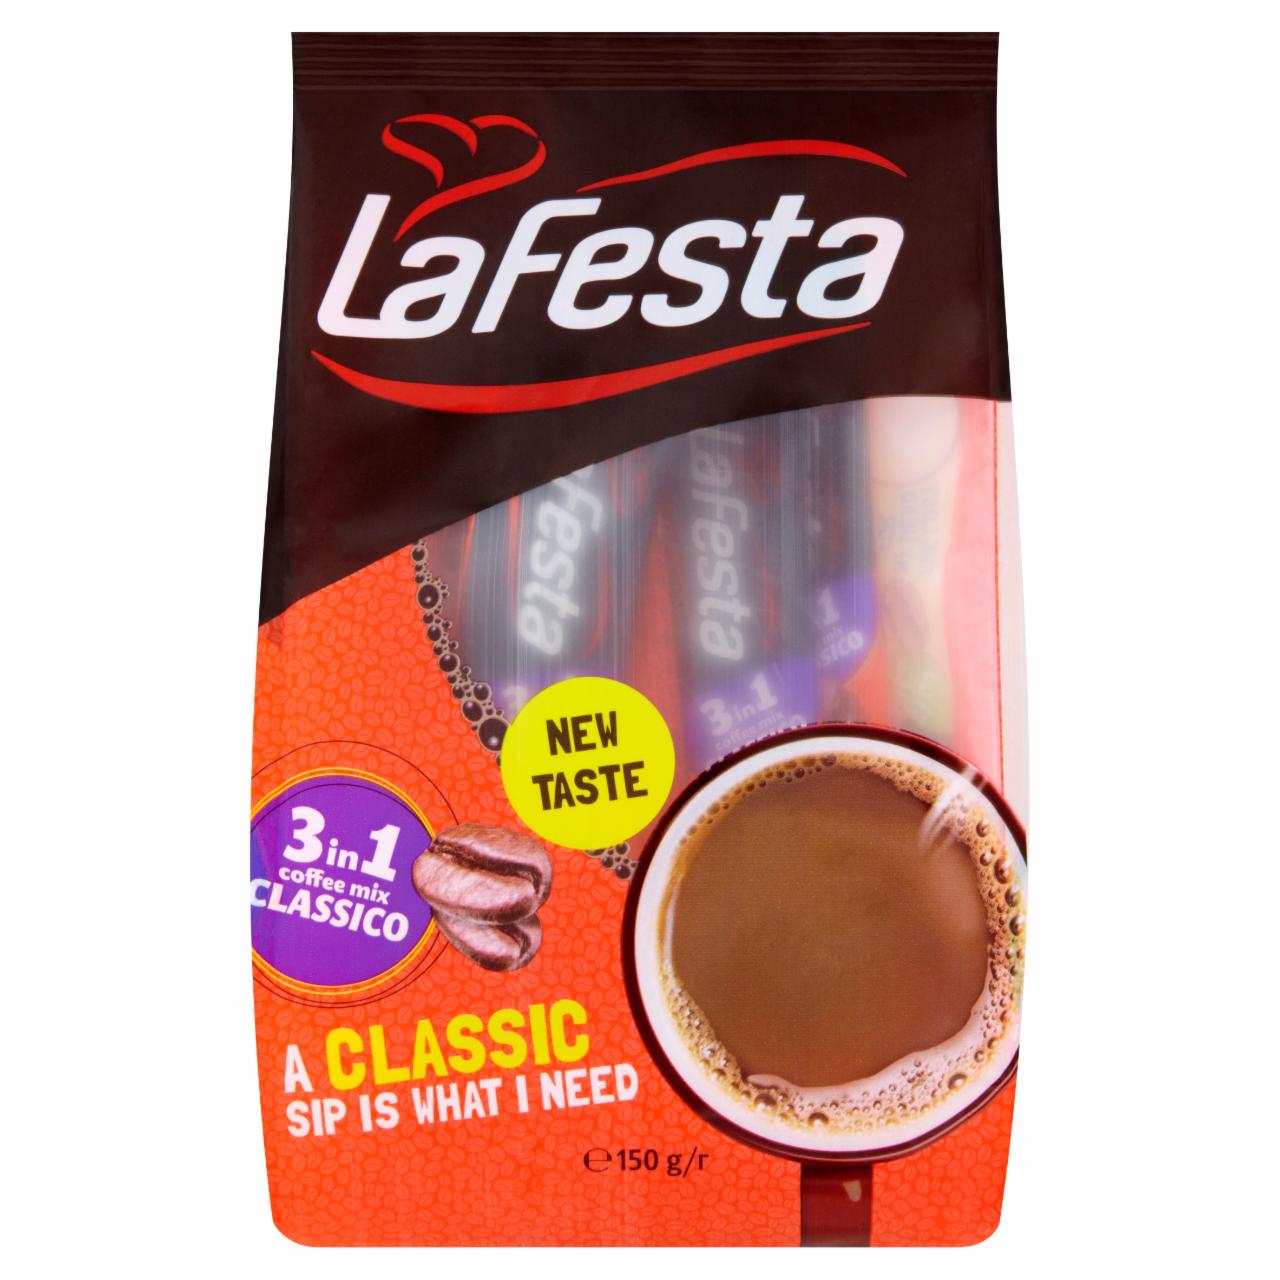 Képek - La Festa Classico 3in1 azonnal oldódó kávéspecialitás 10 x 15 g